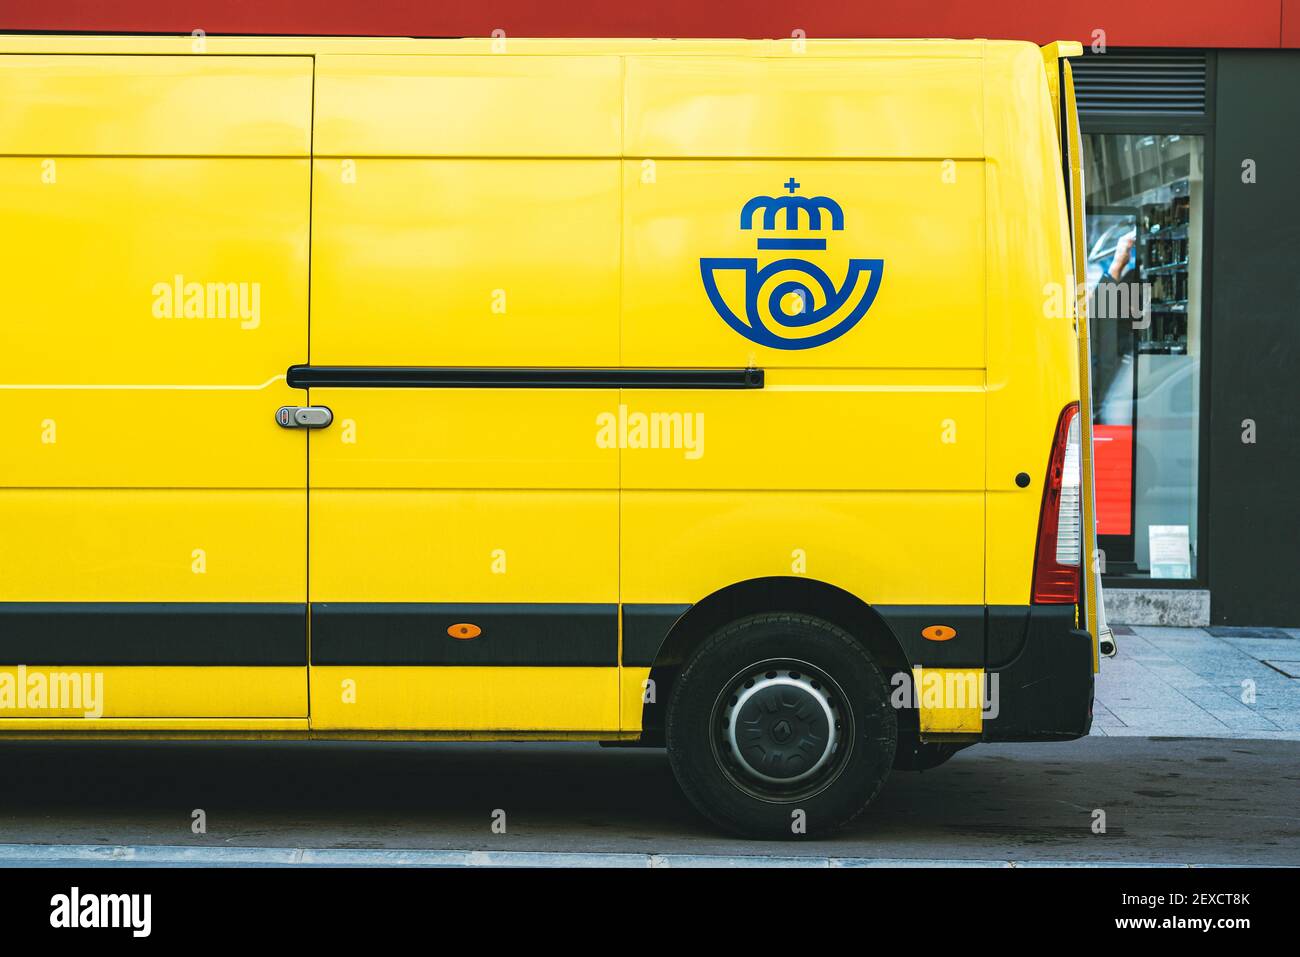 Gelber Lieferwagen von Correos, die Post spanische Postfirma liefert Auf einer öffentlichen Straße.Öffentliche Post in Spanien Stockfoto